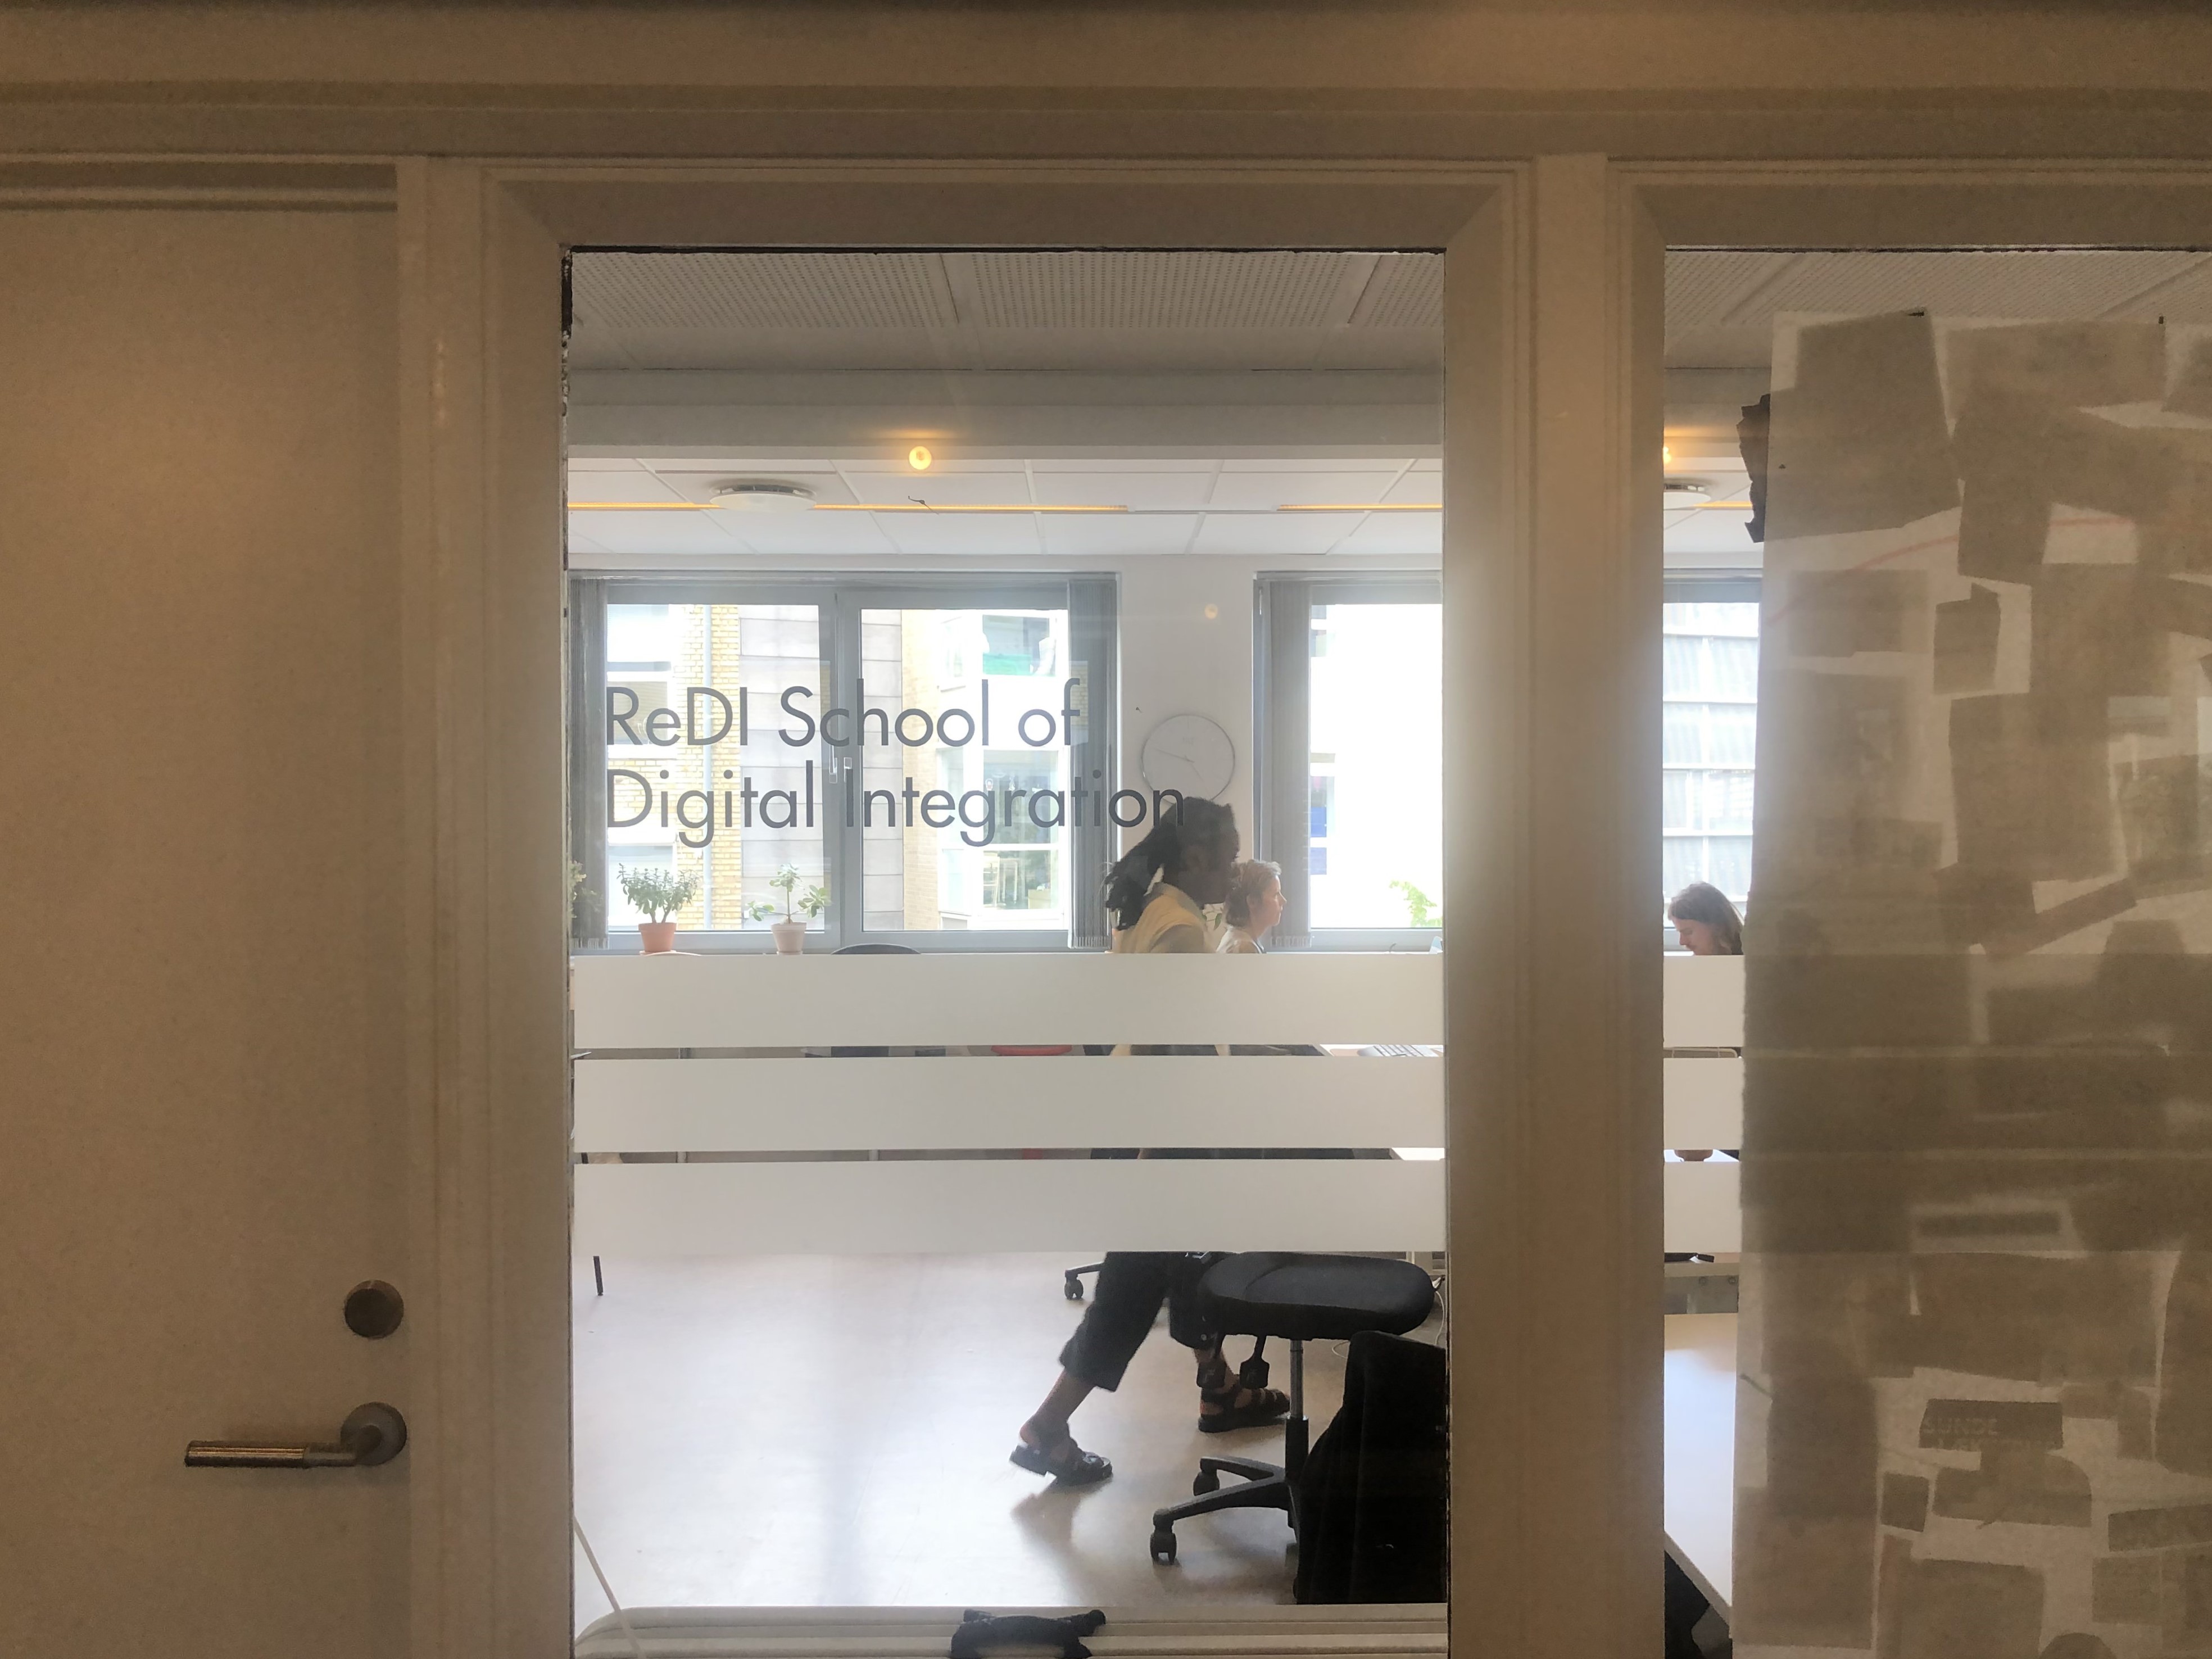 The door to the ReDI School of Digital Integration in Copenhagen, Denmark.